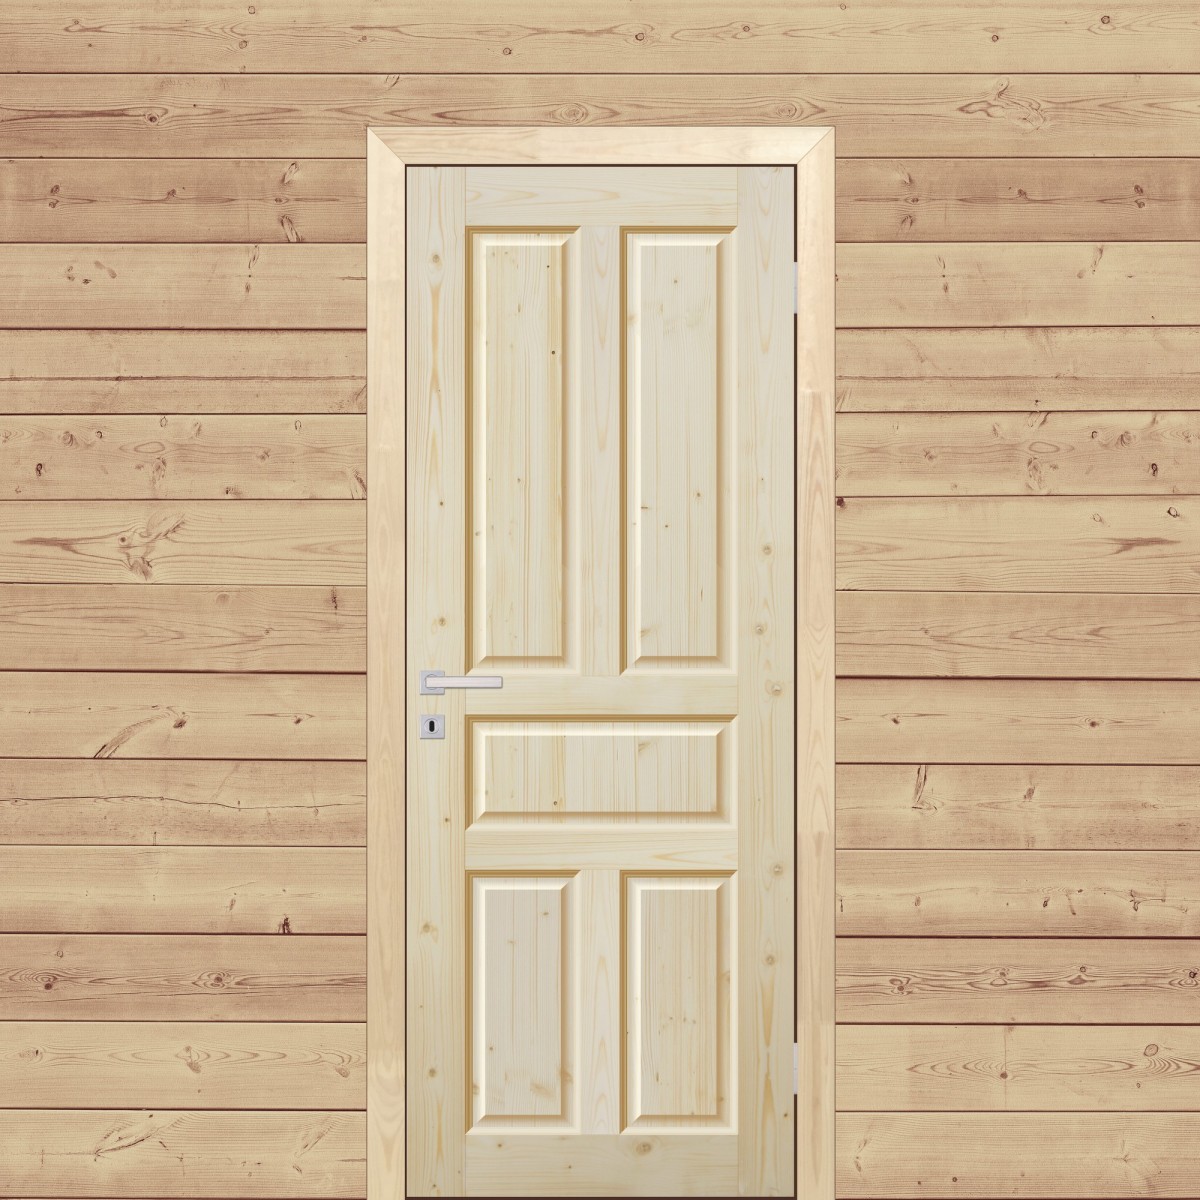 Дверь межкомнатная глухая Кантри 90x200 см, массив хвои, цвет натуральный